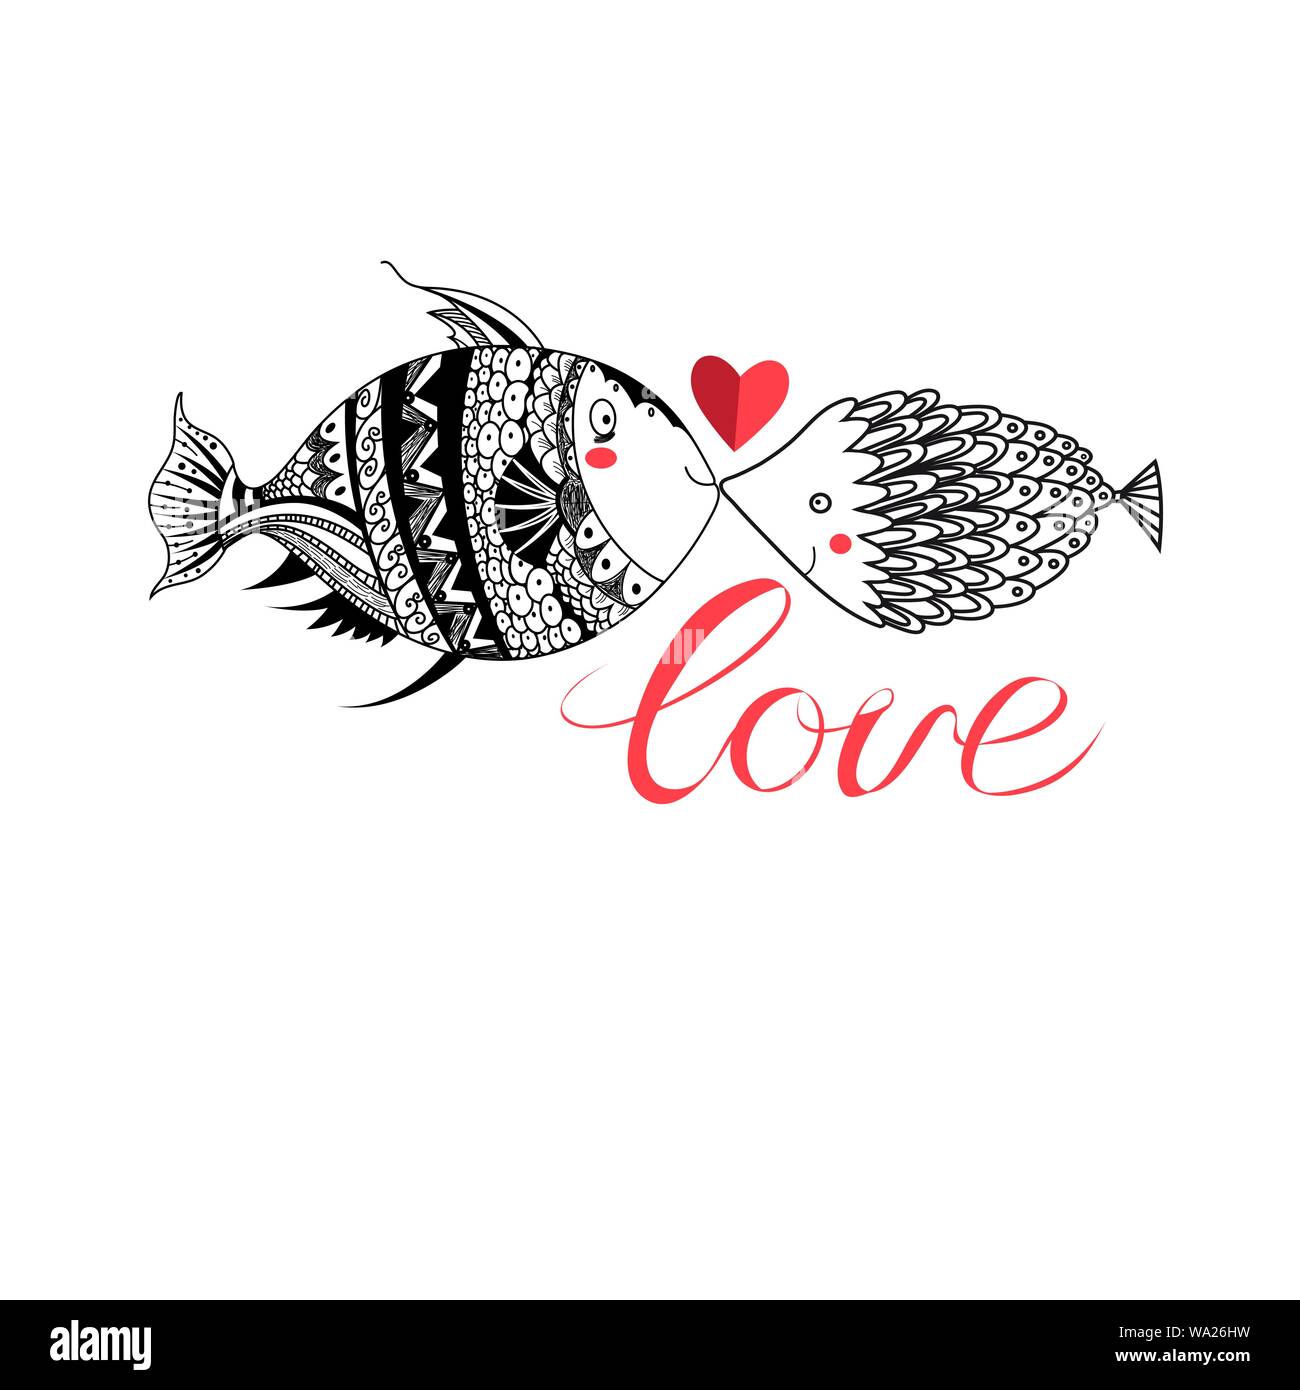 Liebevolle Grafik Fisch Mit Herz Auf Weissem Hintergrund Valentinstag Grusskarten Vorlage Stock Vektorgrafik Alamy